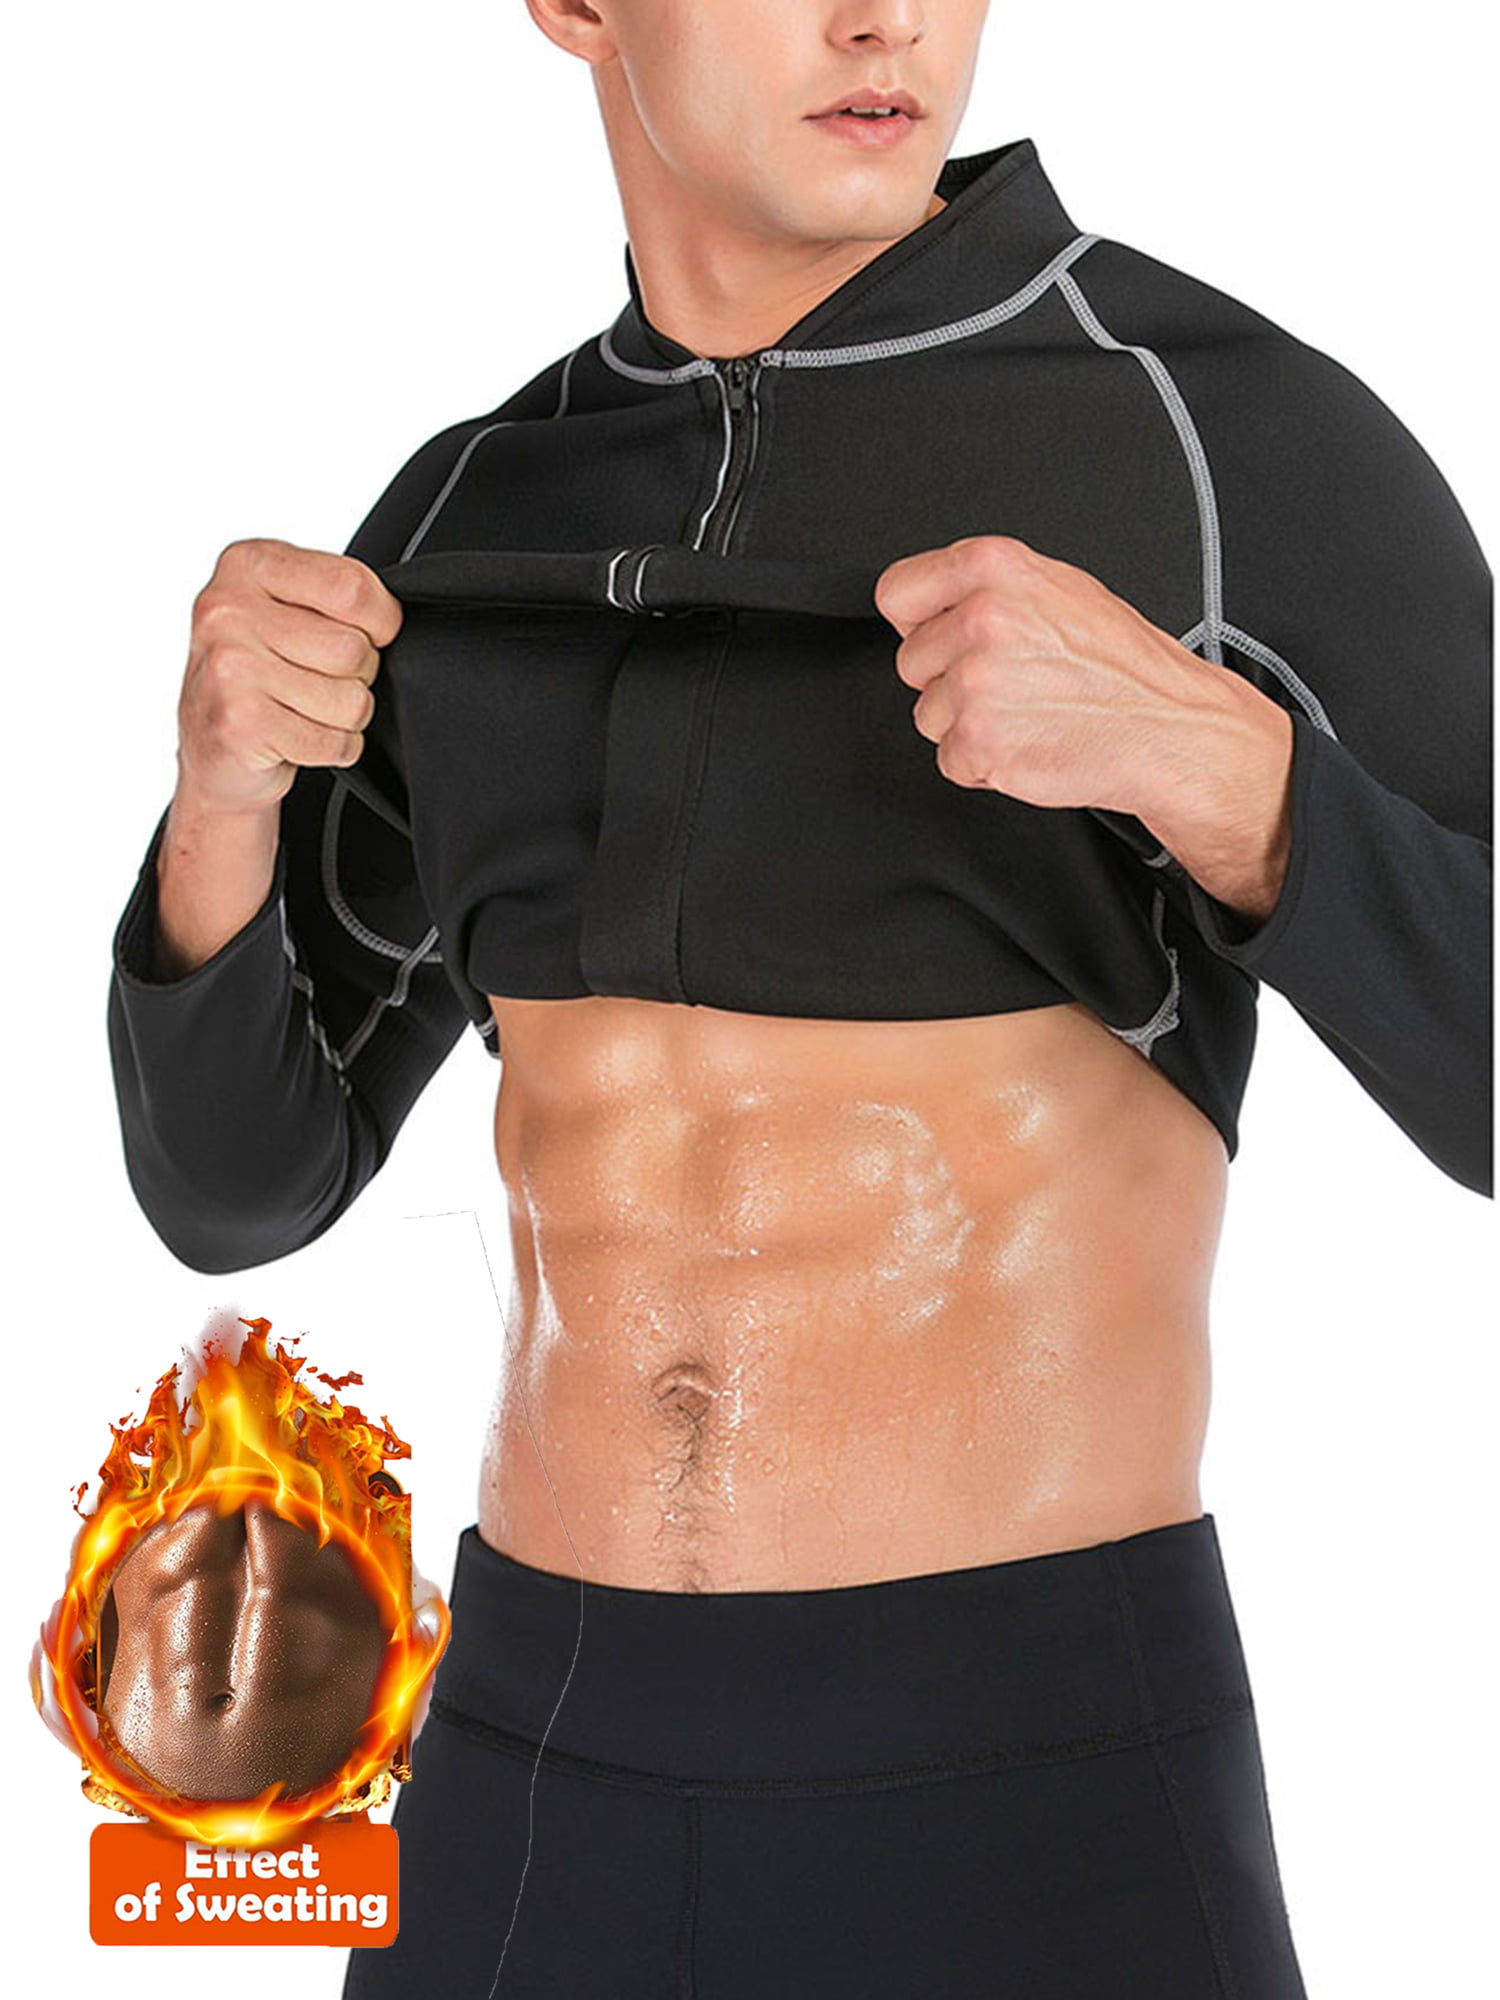 Ursexyly Women Sauna Sweat Vest Slimming Neoprene Hot Sauna Suit Cute Fat Burner Waist Trainer Tank Top